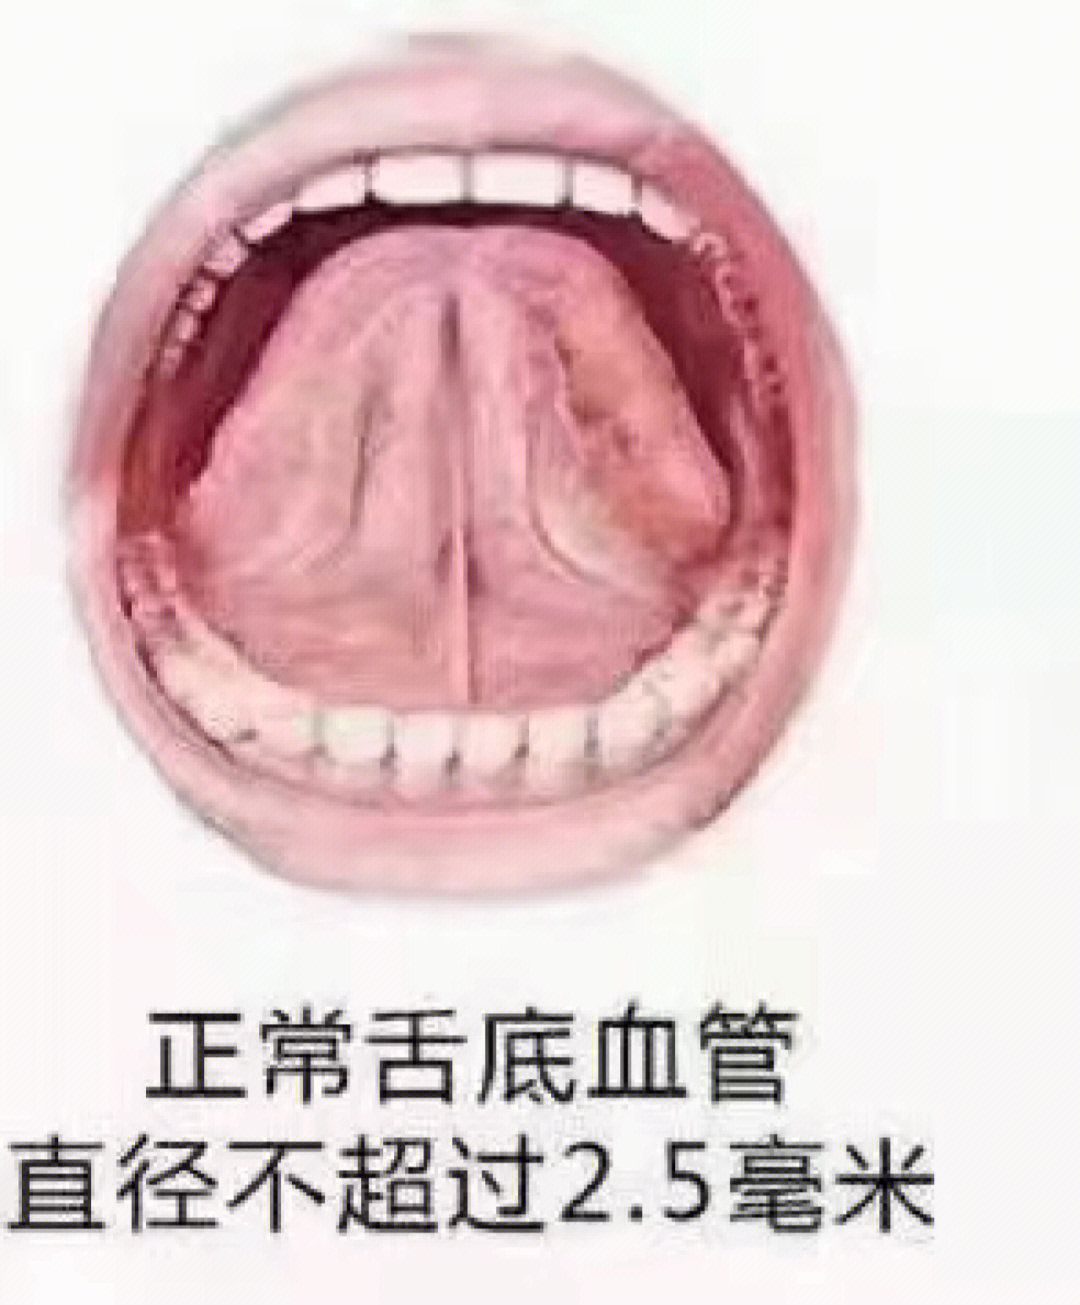 舌诊 黄燥苔:成因有数种: (1)苔薄黄而干,为病初外邪化热入里,邪热伤